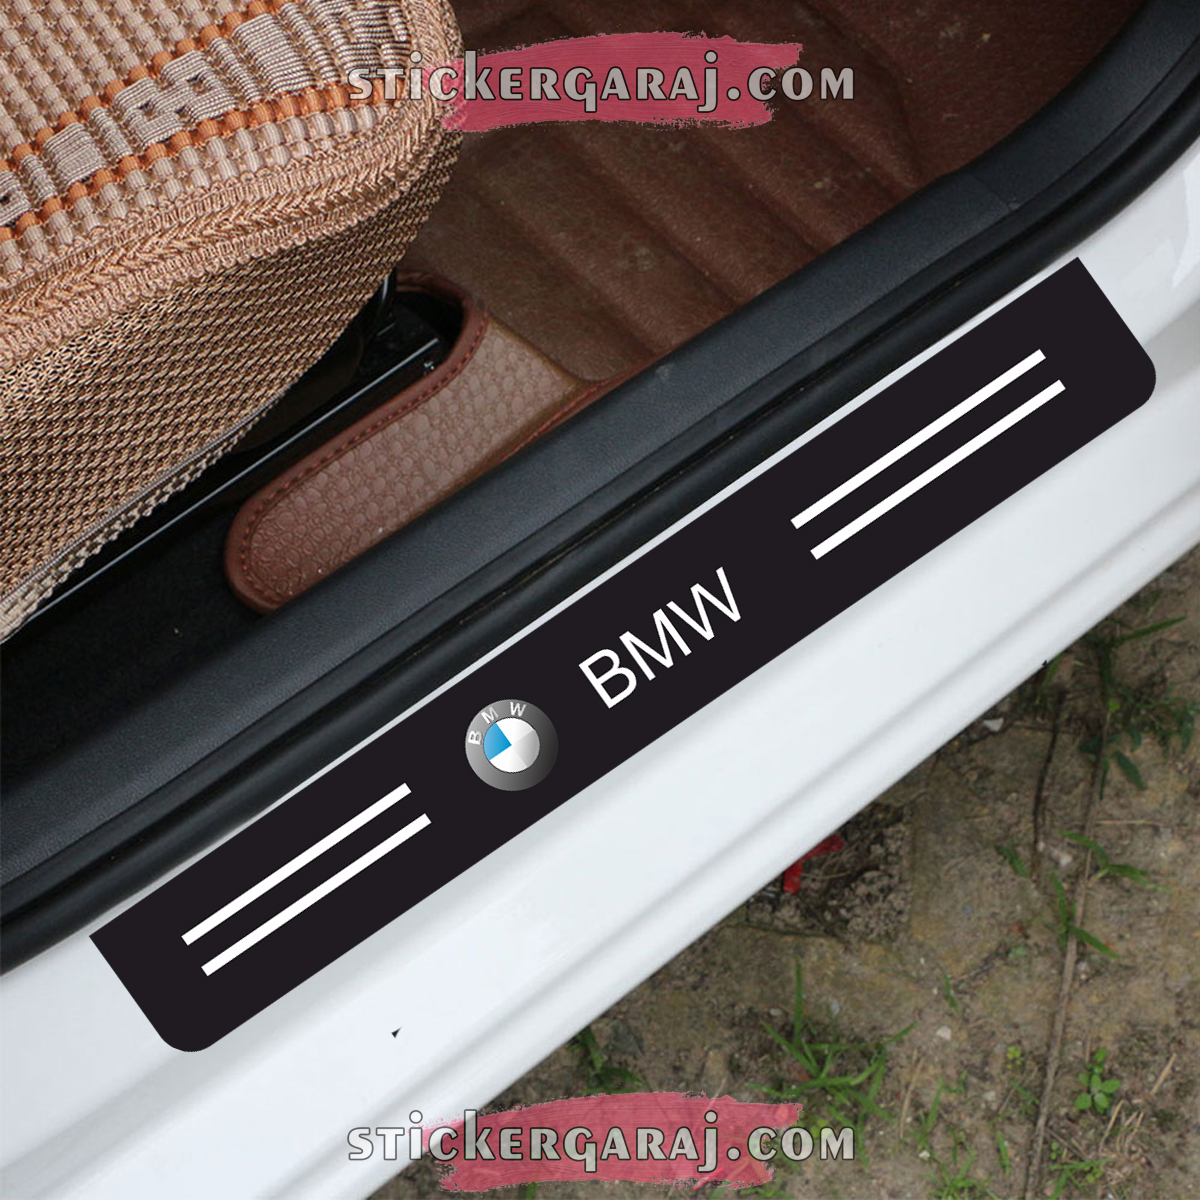 BMW kapi esigi 3 - Bmw kapı eşiği sticker